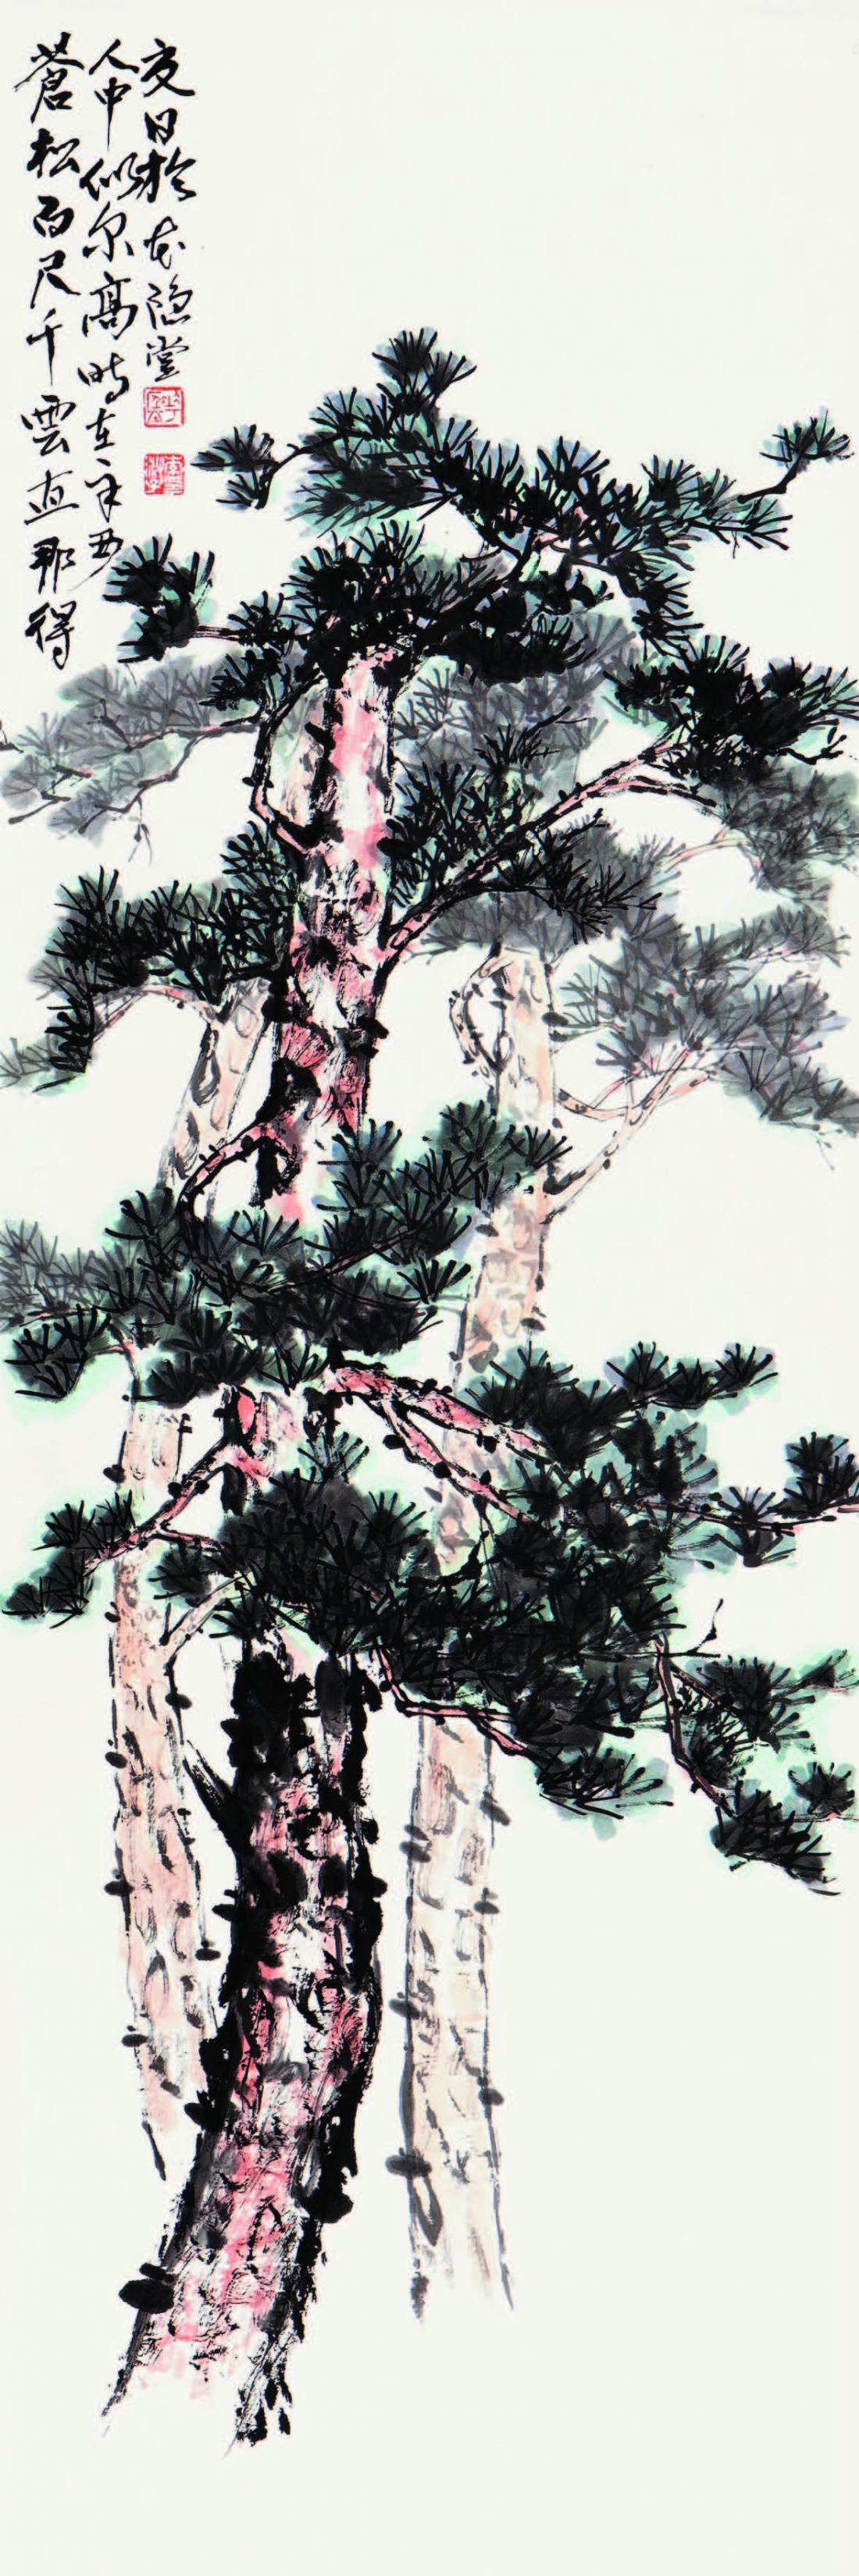 소나무 松 Pine